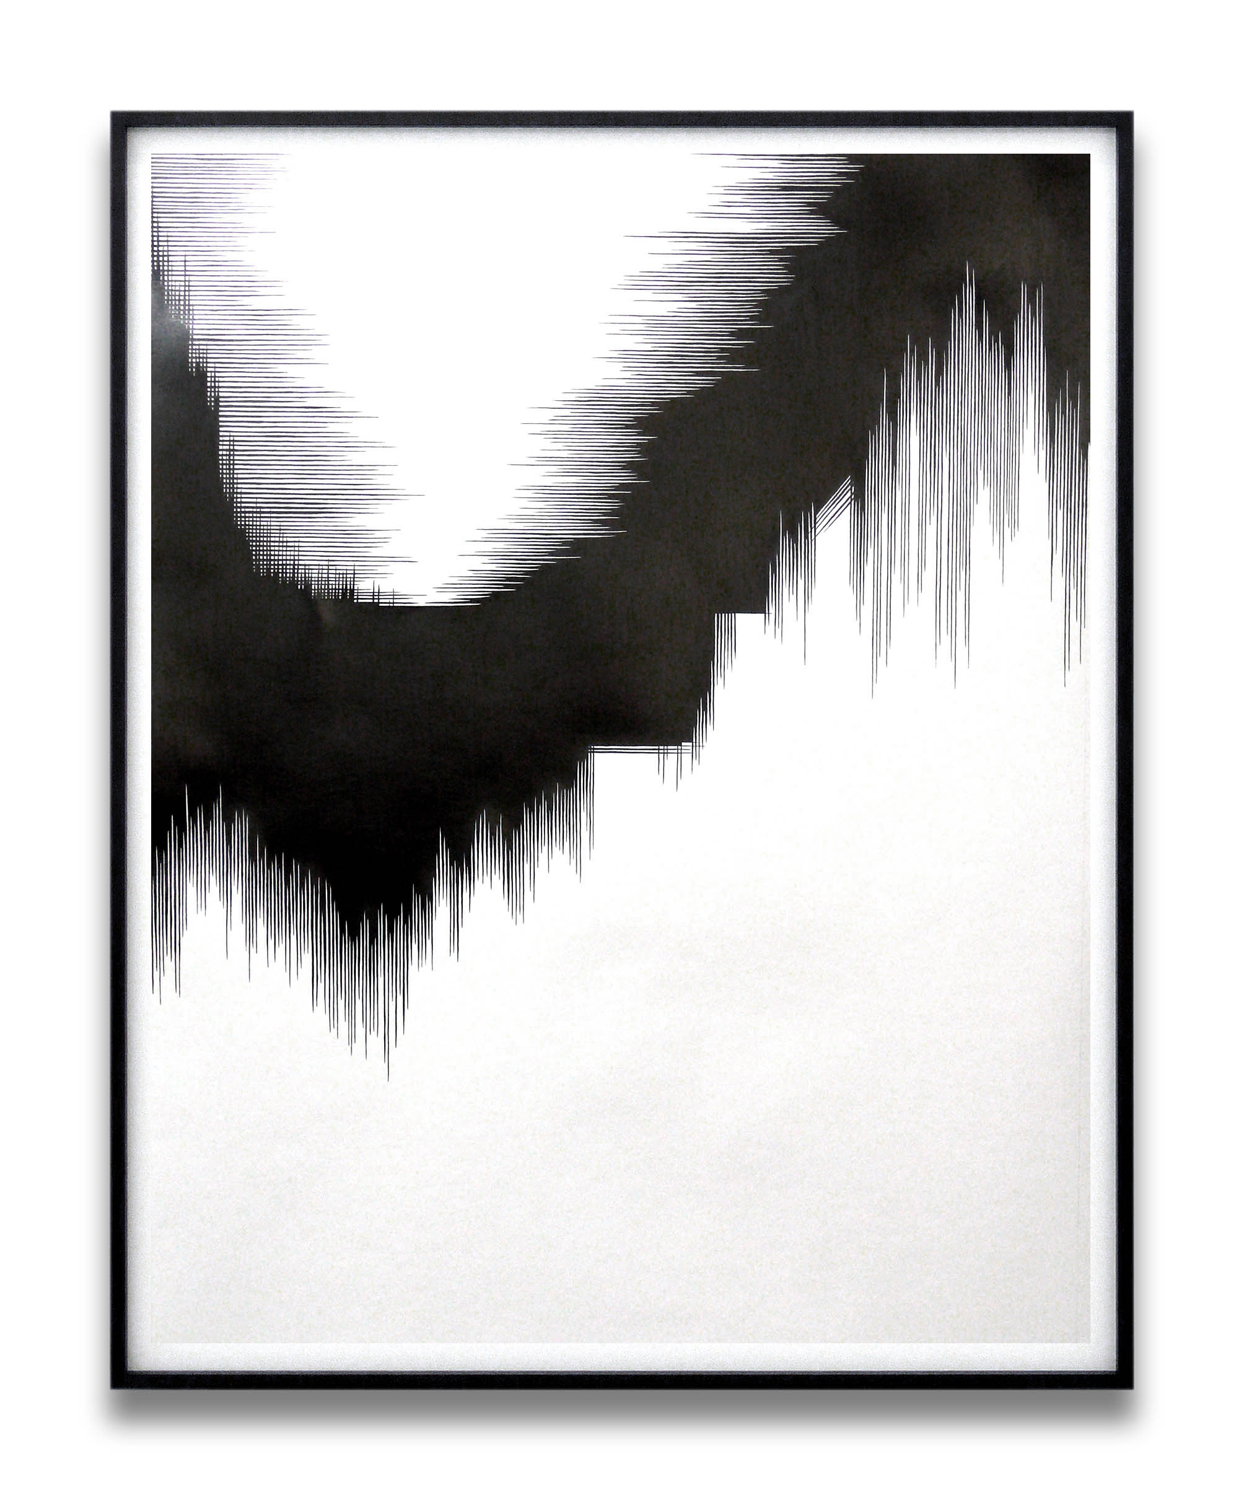    draft V   , 2010, pencil on paper, 140 x 110cm   squall line, Les Modules, Palais de Tokyo, Paris 